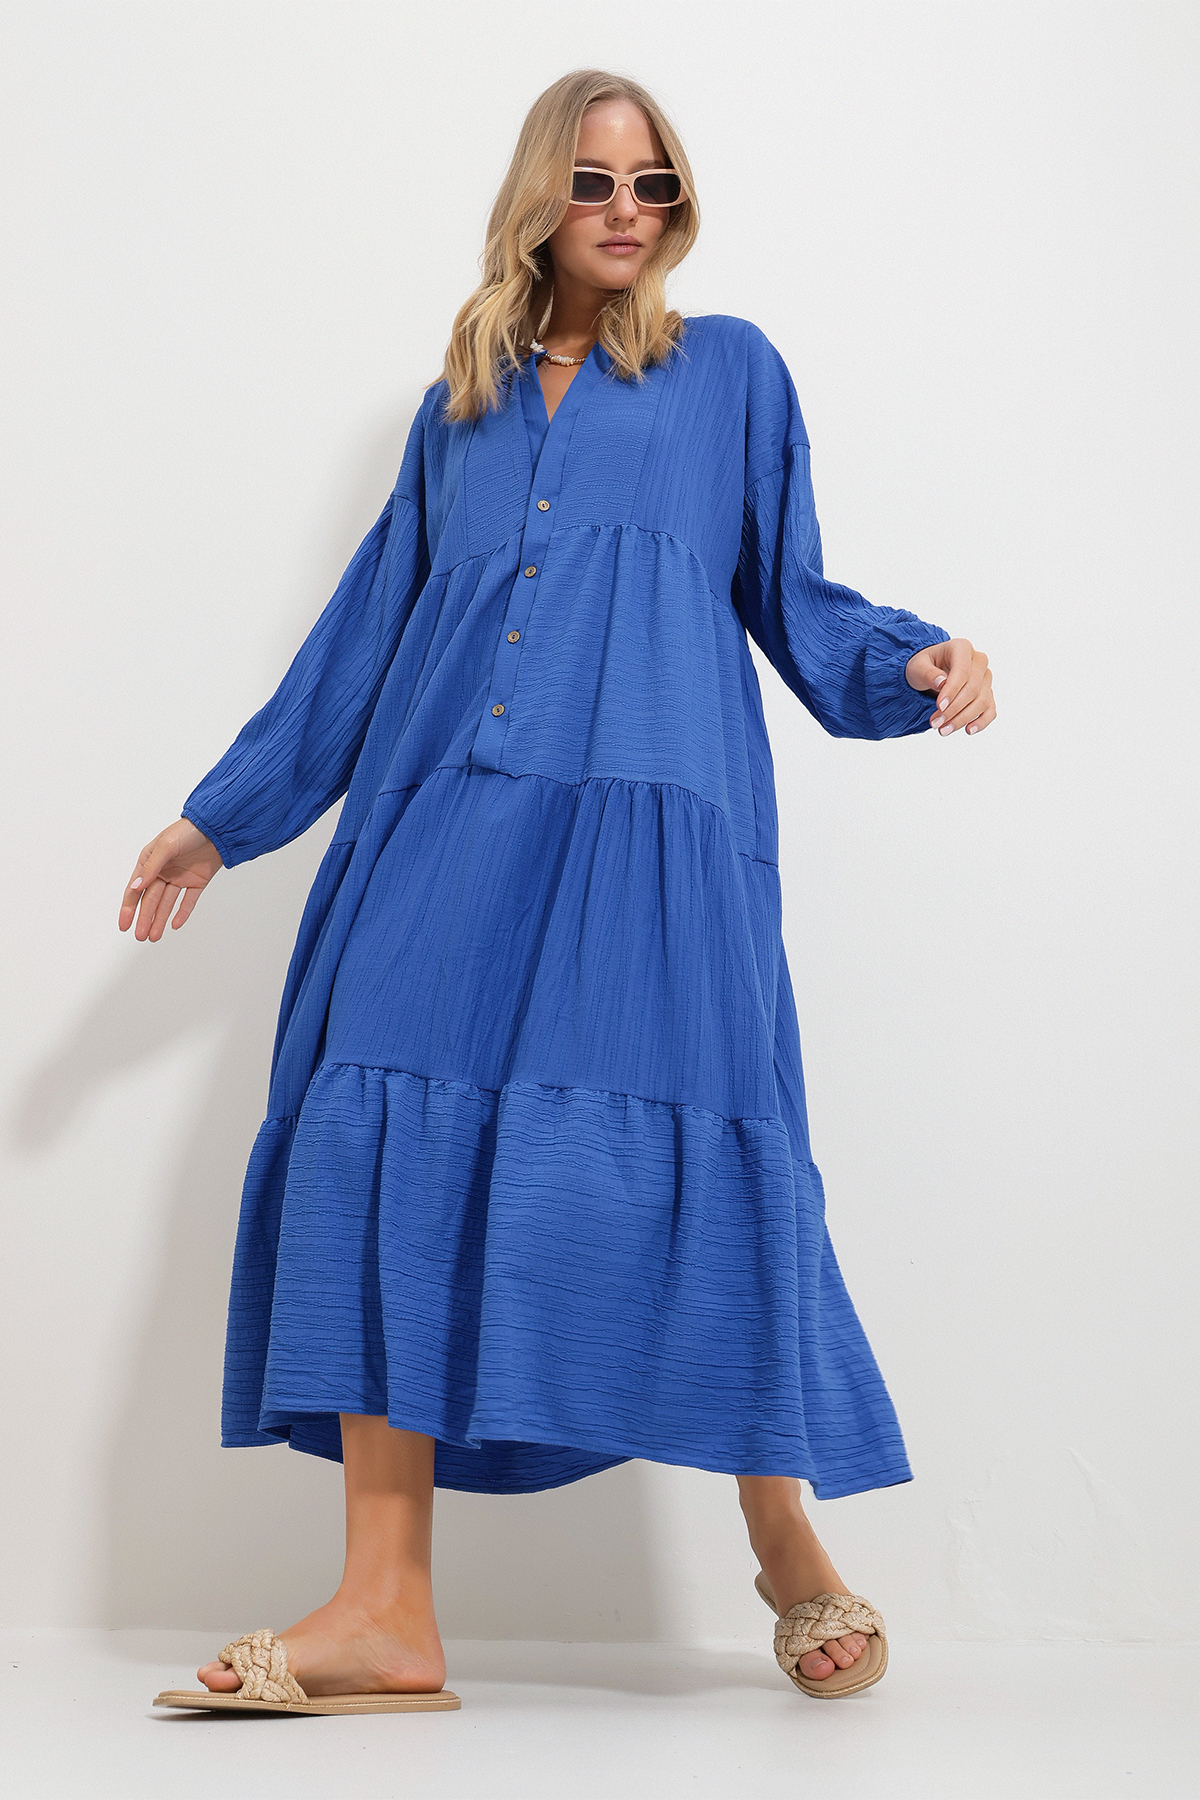 Levně Trend Alaçatı Stili Women's Saxe Blue Maxi Length Dress